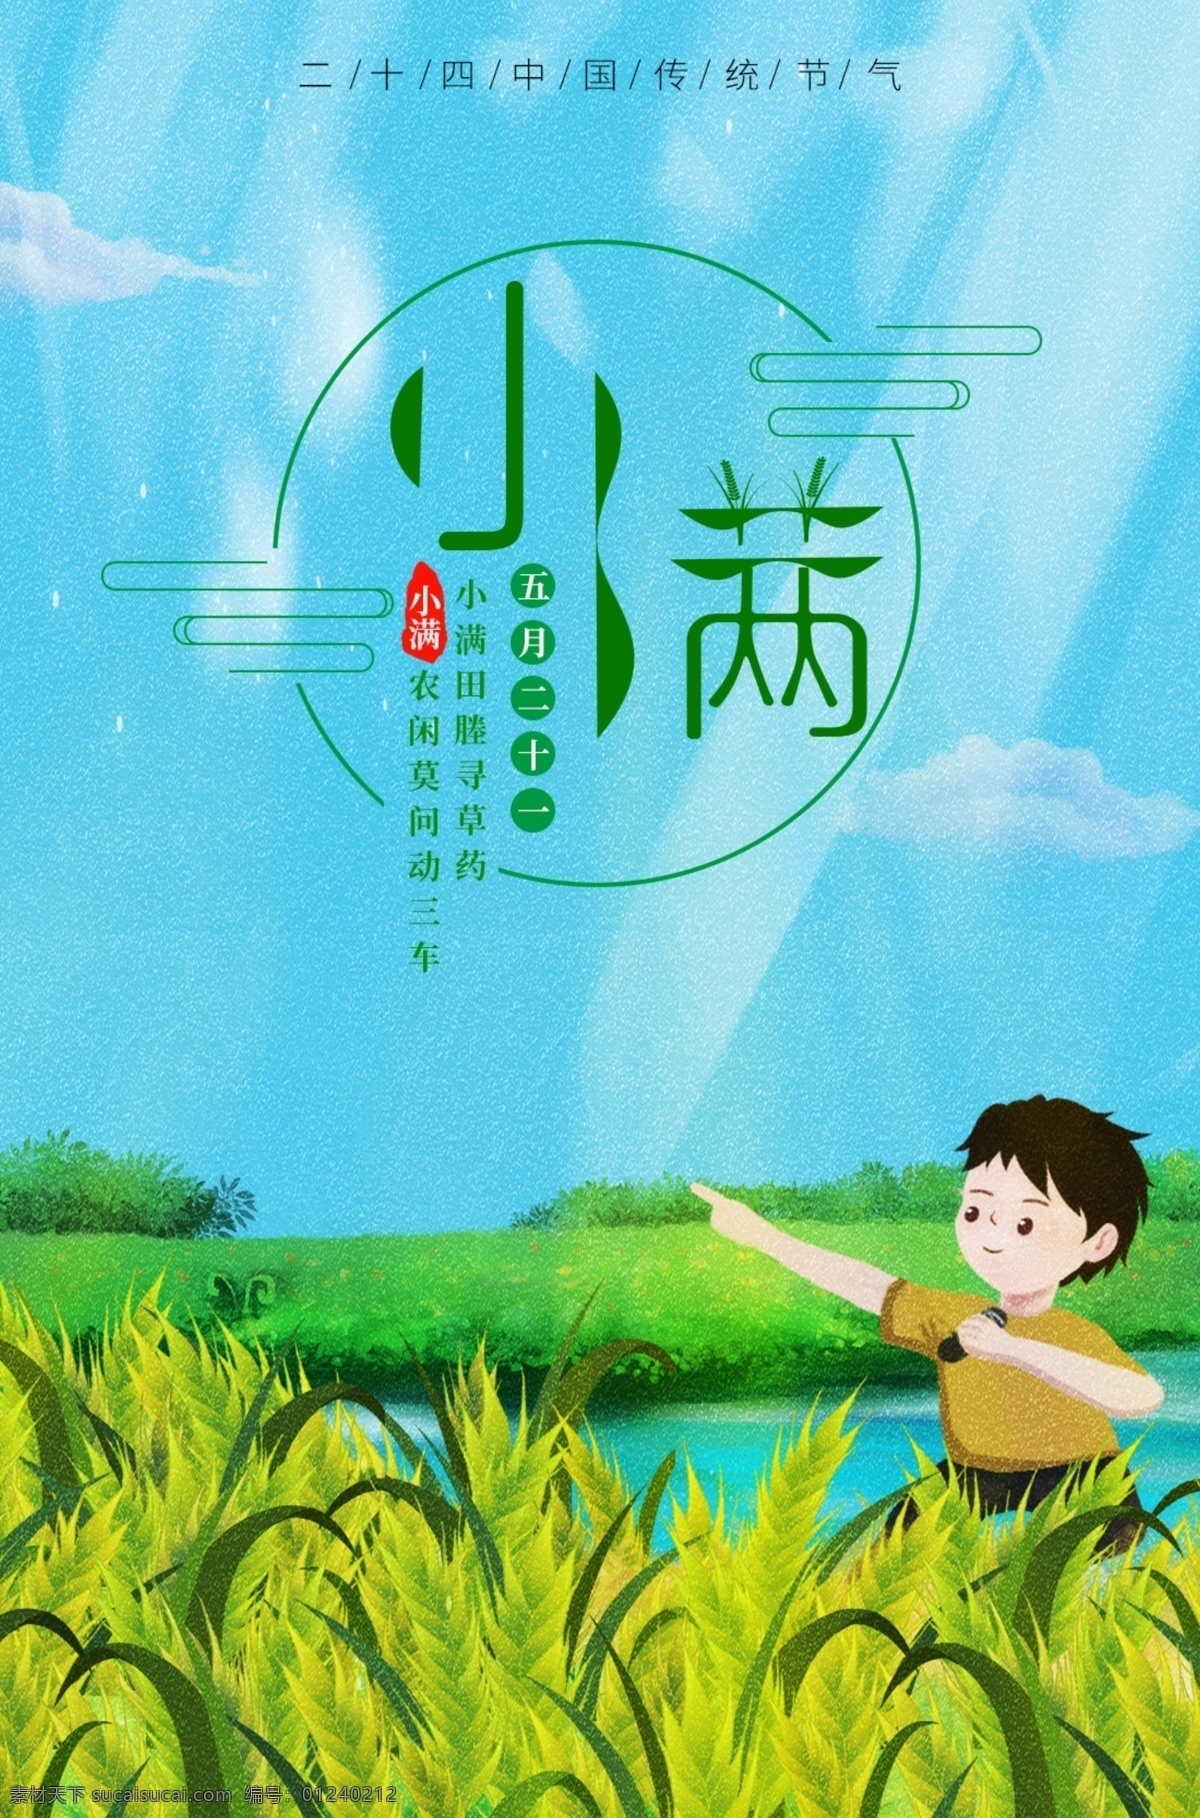 小满 蓝色 二 十 四 中国 传统 节气 清新 植物 海报 二十四节气 中国传统节气 植物海报 五月二十一